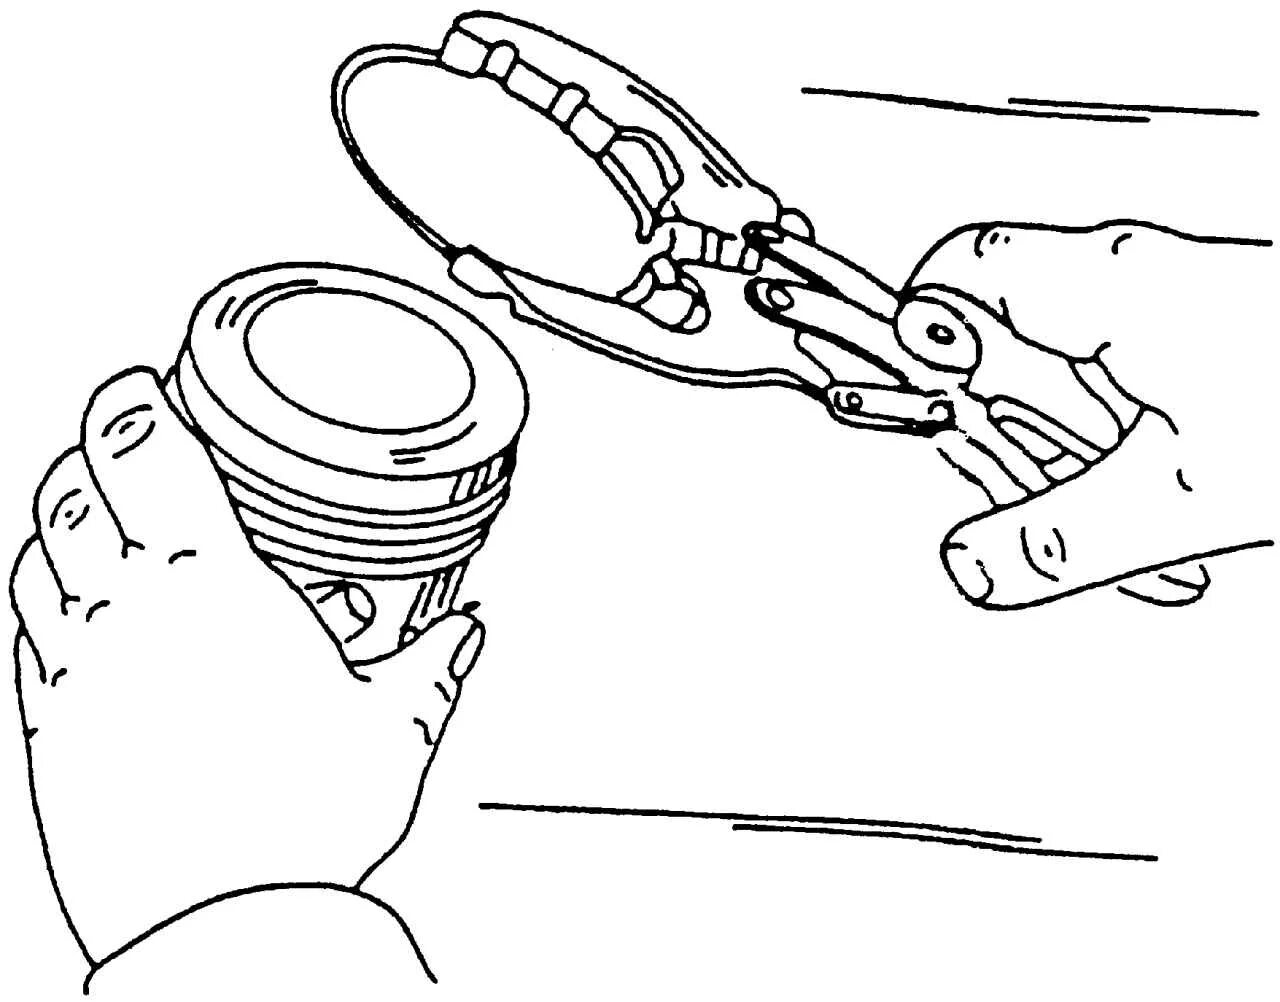 Снятие поршней. Снятие поршневых колец с поршня КАМАЗ 740. Съемник для снятия поршневых колец. Снятие поршневых колец с поршня съемником. Приспособление для установки поршневых колец.